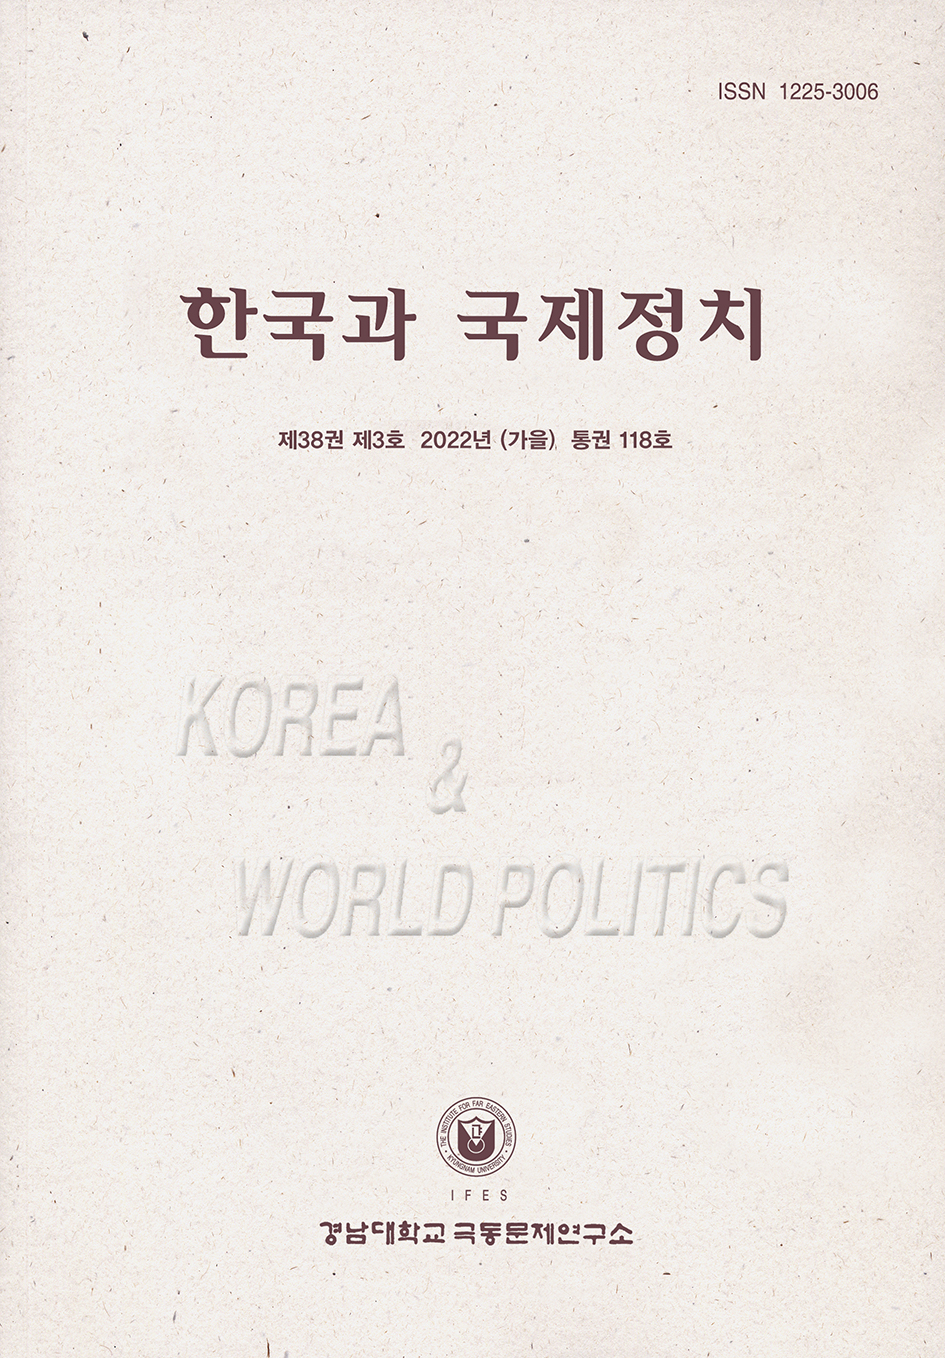 Korea and World Politics, Vol.38, No.3